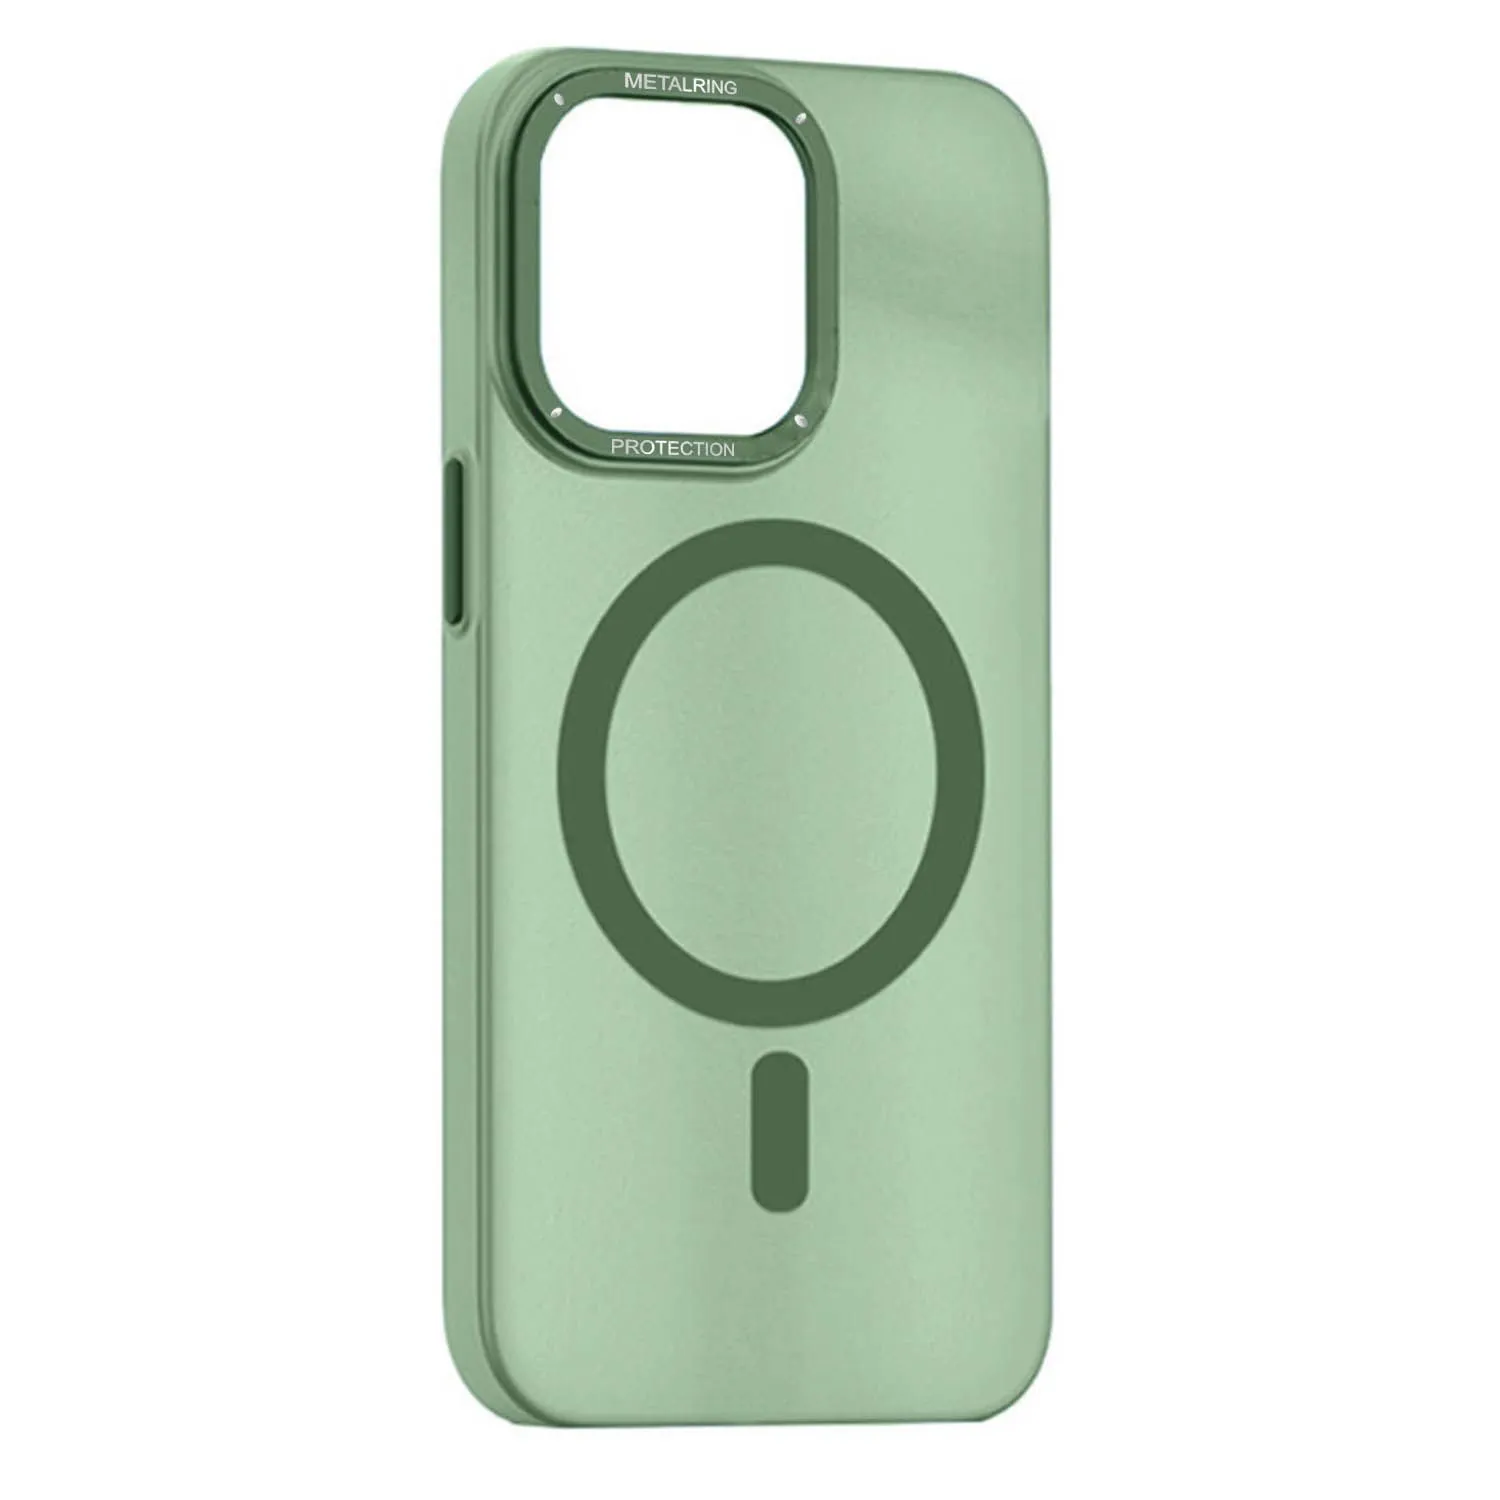 Матовый чехол Apple iPhone 12, Apple iPhone 12 Pro с металлической окантовкой с MagSafe (зеленый)